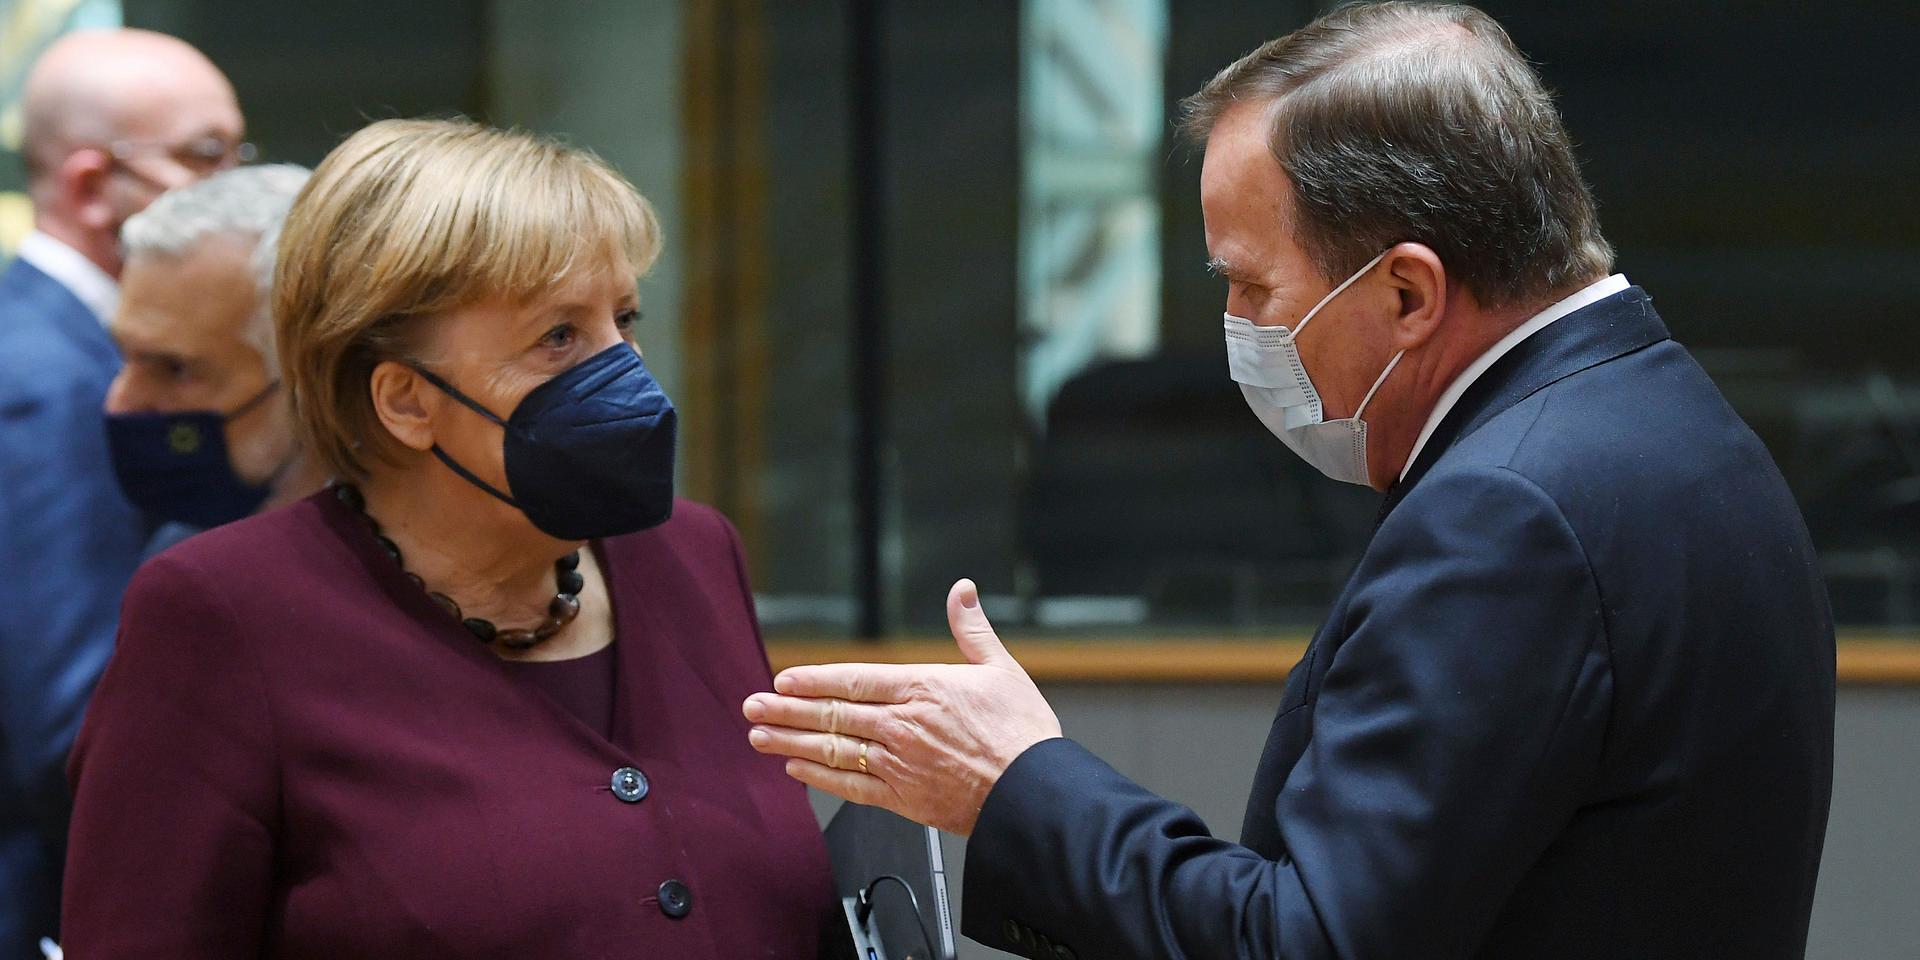 Två veteraner som slutar: Tysklands Angela Merkel och Sveriges Stefan Löfven. De lämnar ett EU med stora inneboende spänningar med många olösta frågor i en tid då unionens grundvalar och den europeiska rättsordningen utmanas.